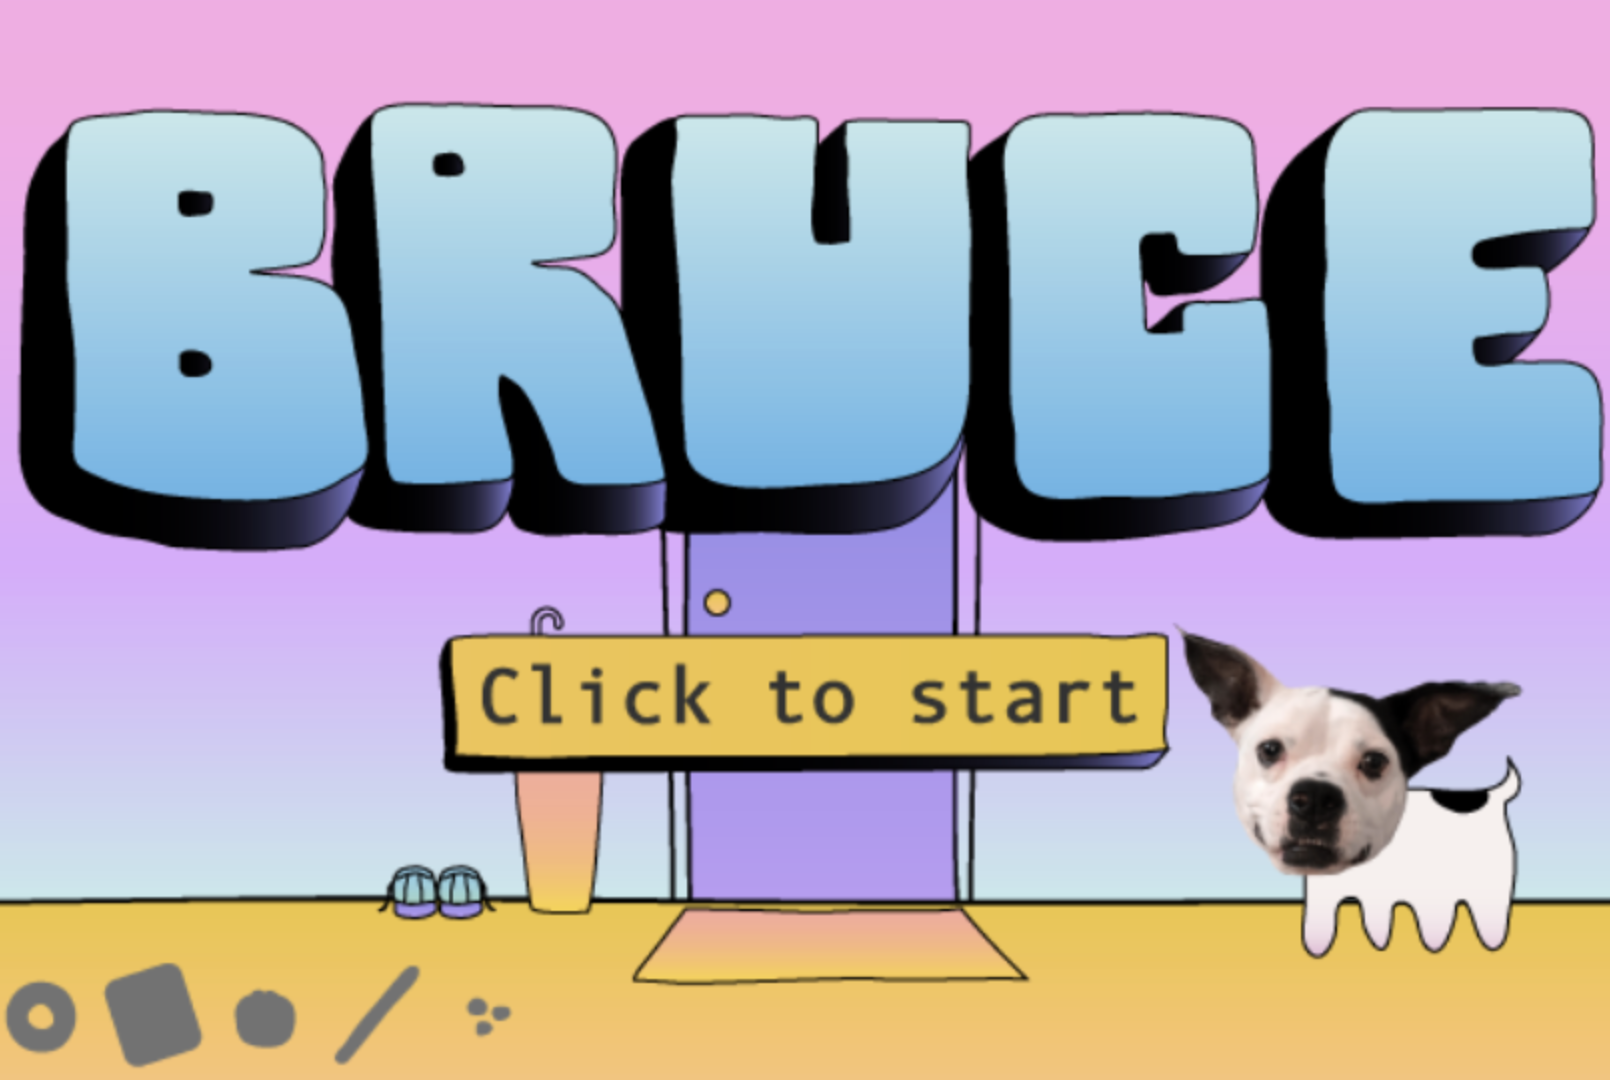 A screencap of the game BRUCE